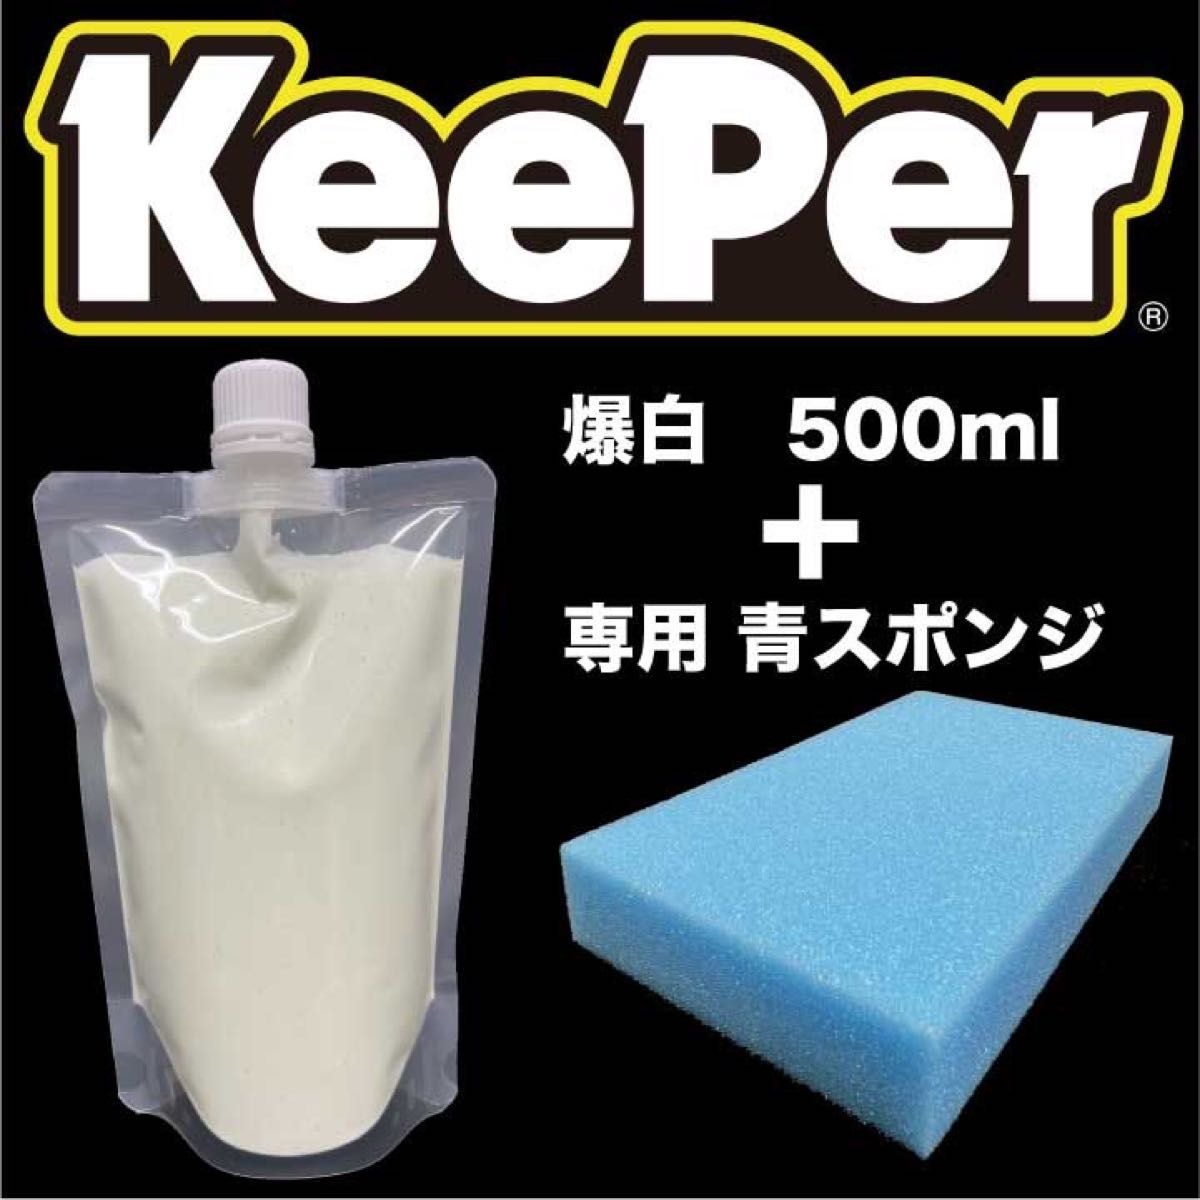 Keeper 爆白 500ml 青スポンジ セット 水垢落とし剤 キーパー技研 キーパー技研 KeePer